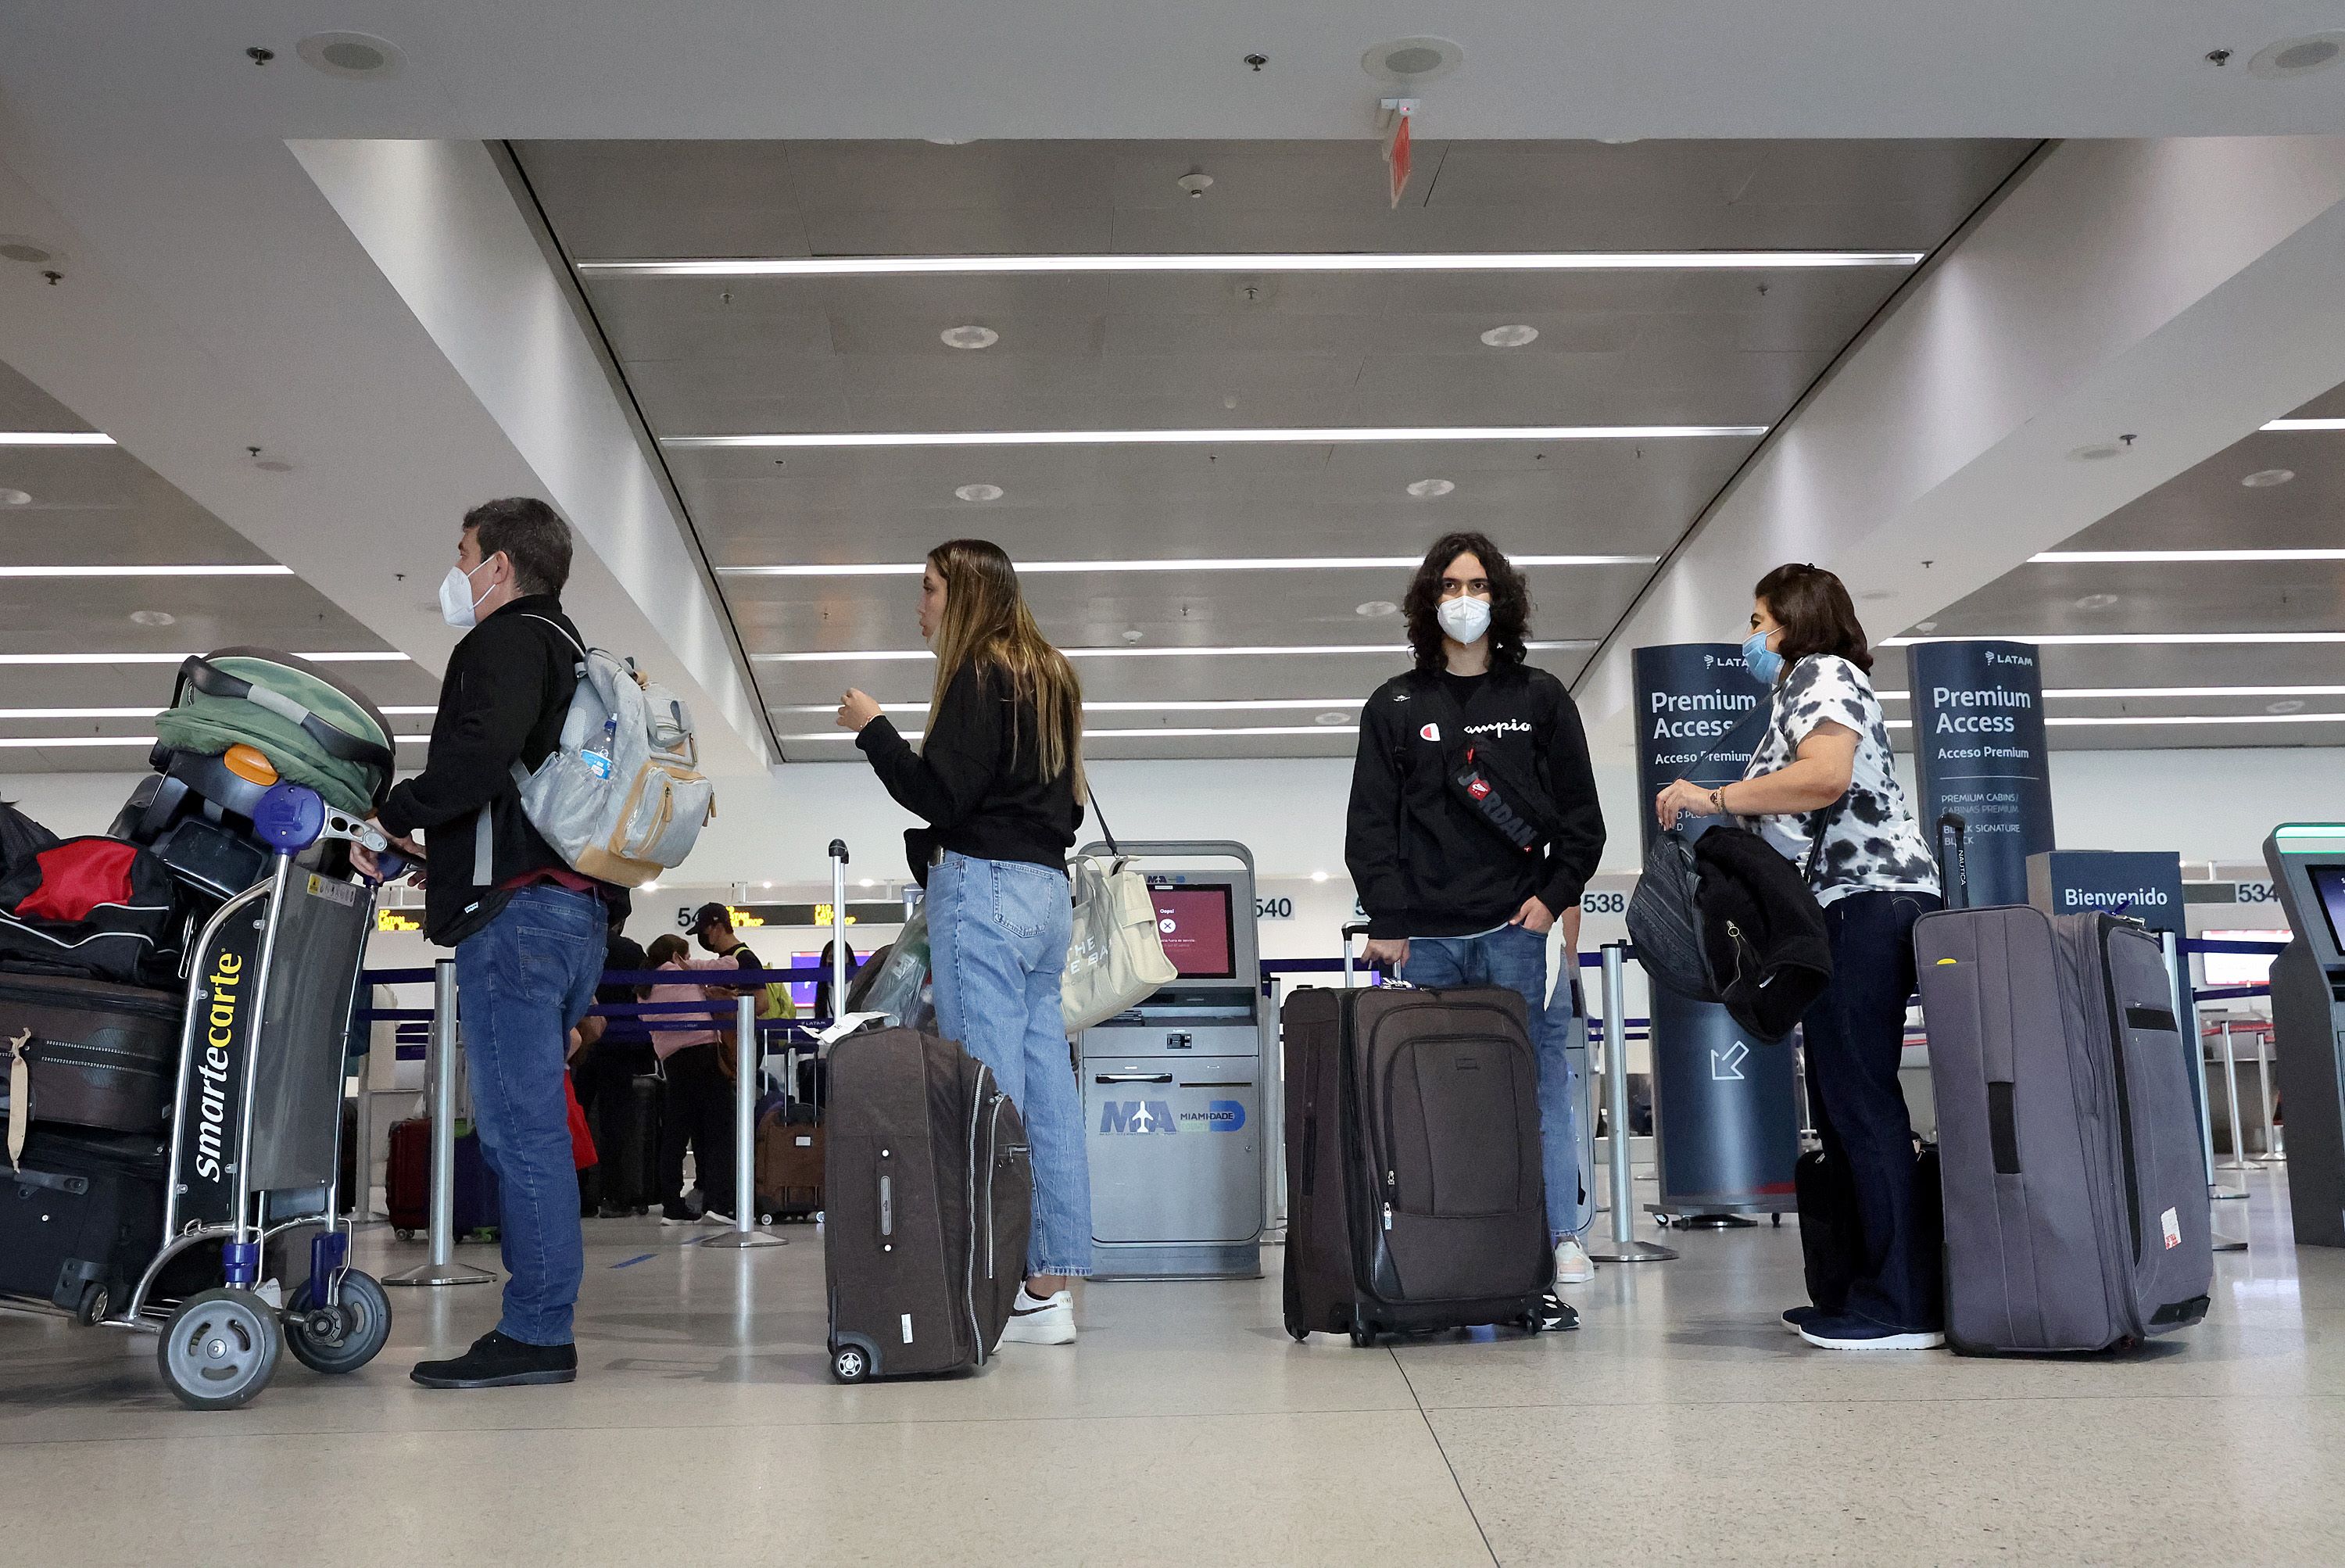 Miles de vuelos en todo el mundo han sido cancelados debido a contagios de coronavirus en el personal de las aerolíneas. (Foto Prensa Libre: AFP)